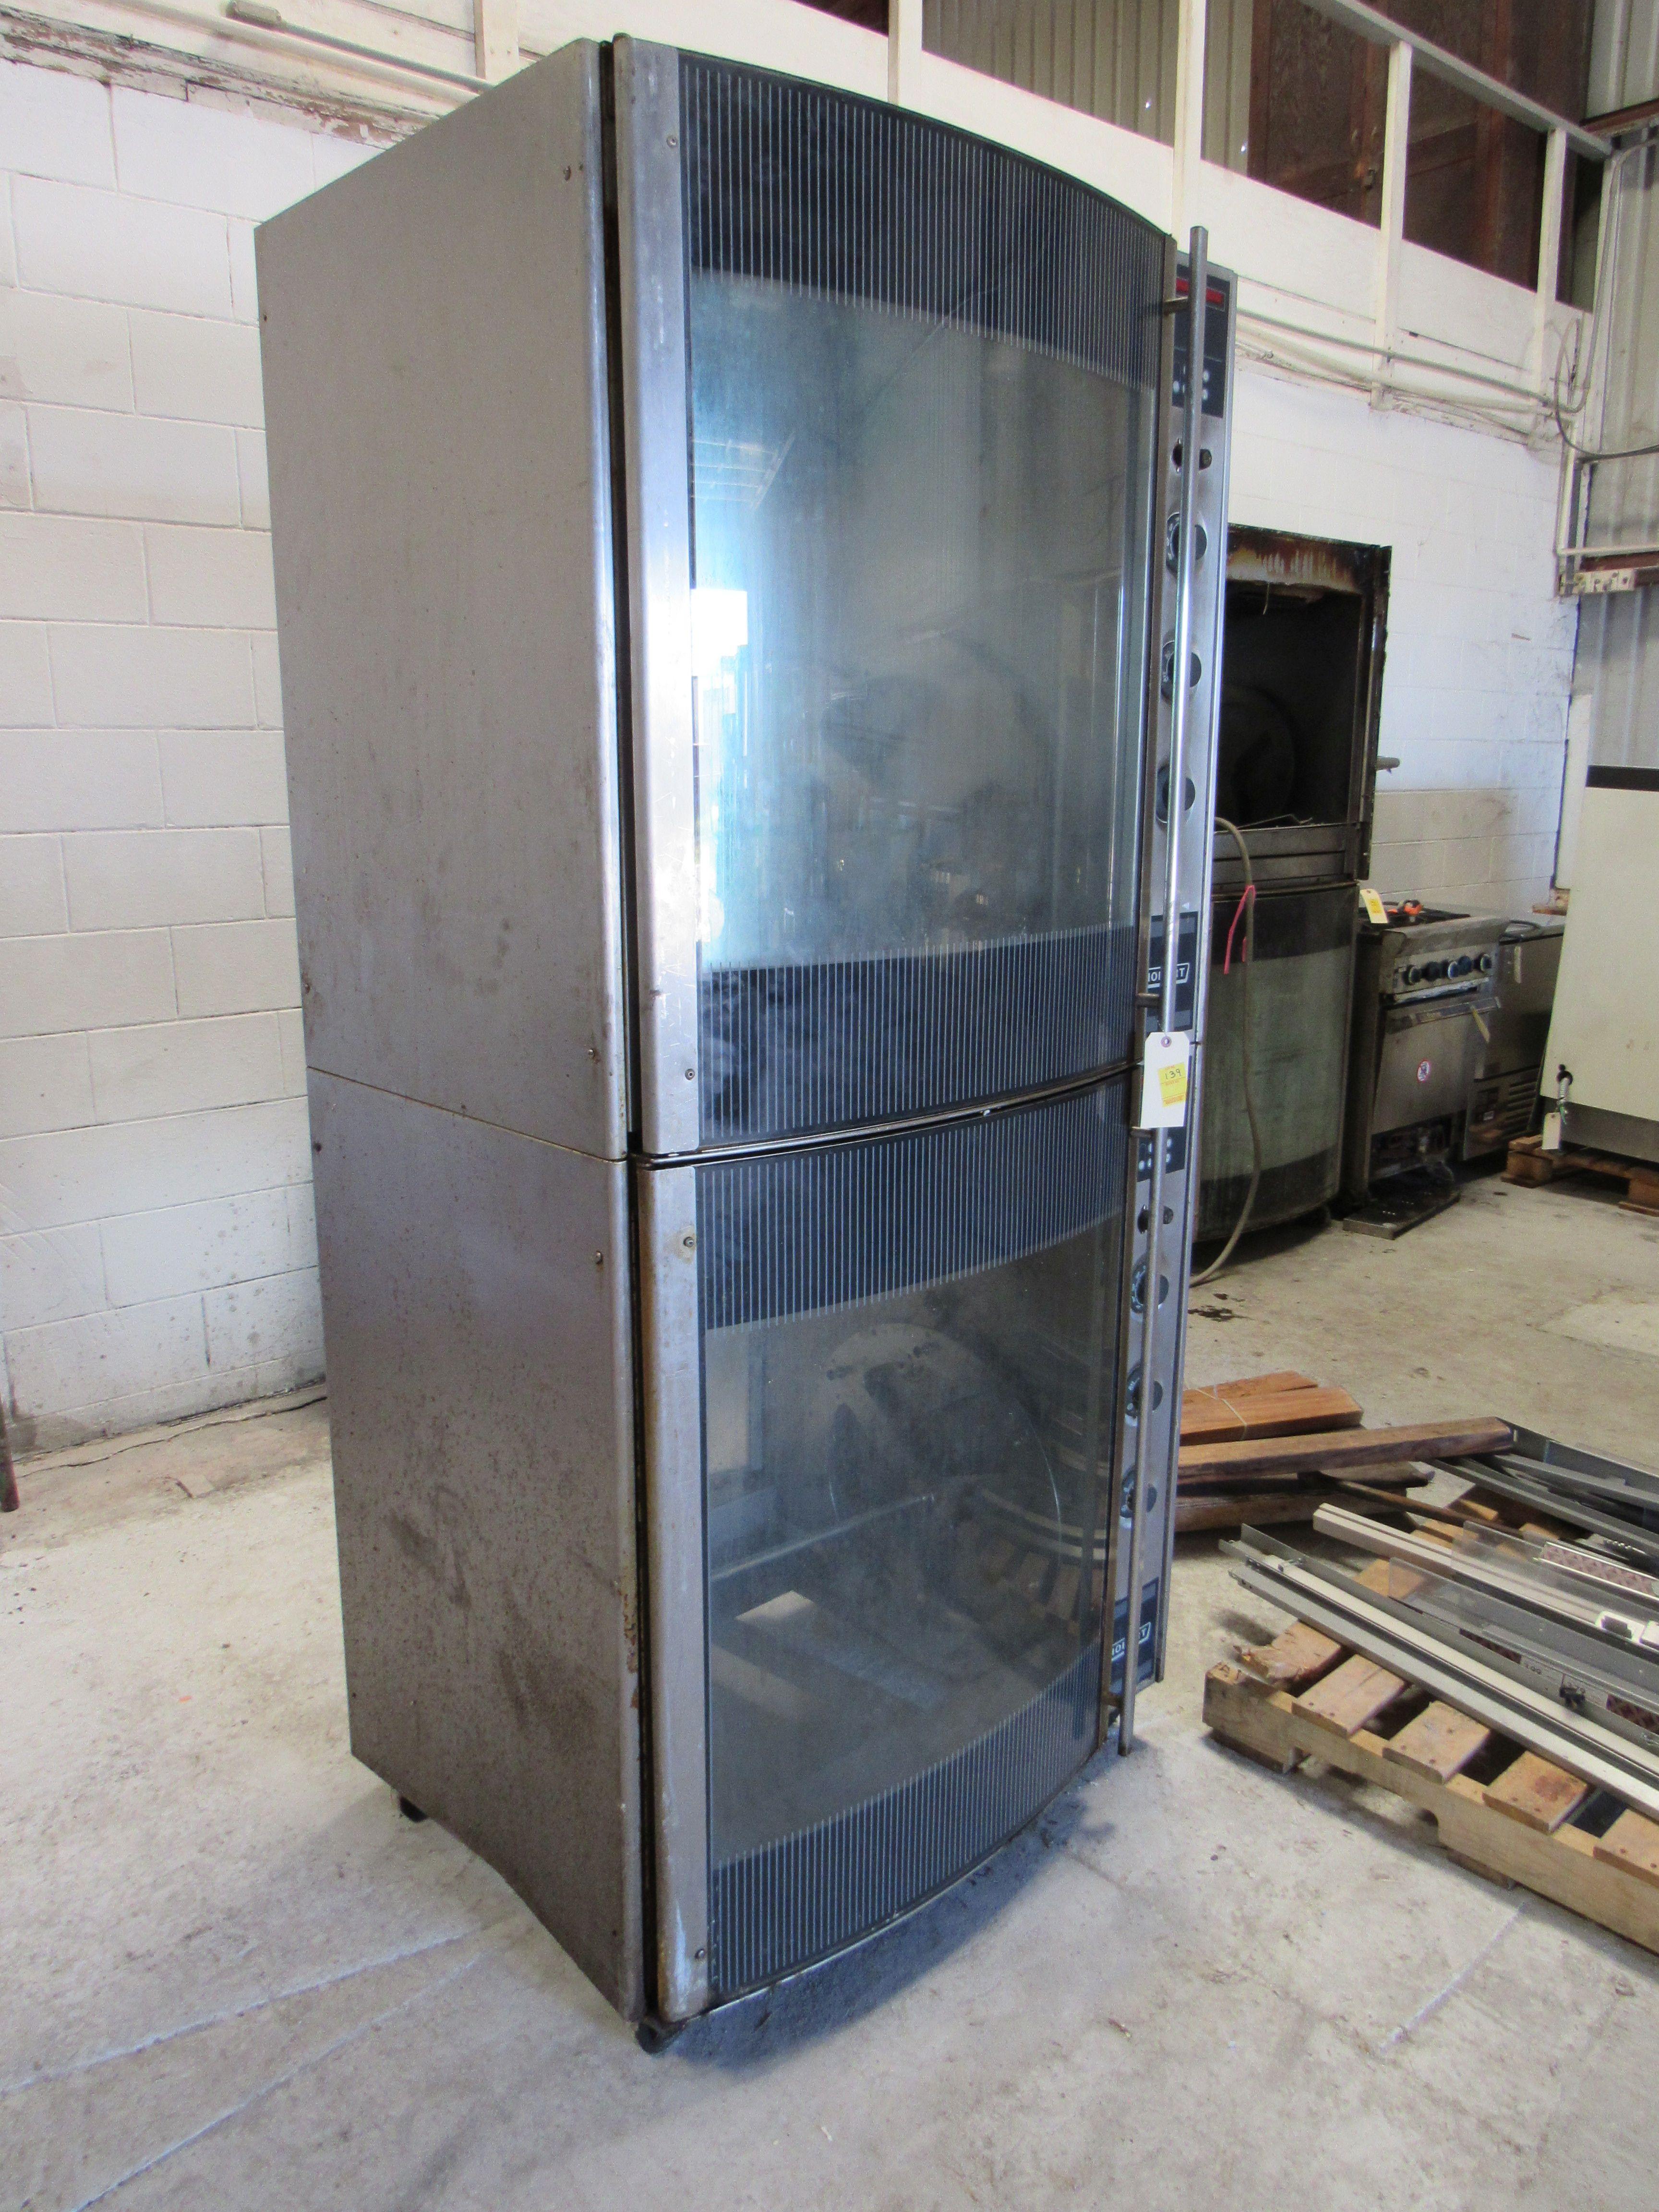 Hobart rotisseri oven 220V 3ph or ph 1 Model HR7